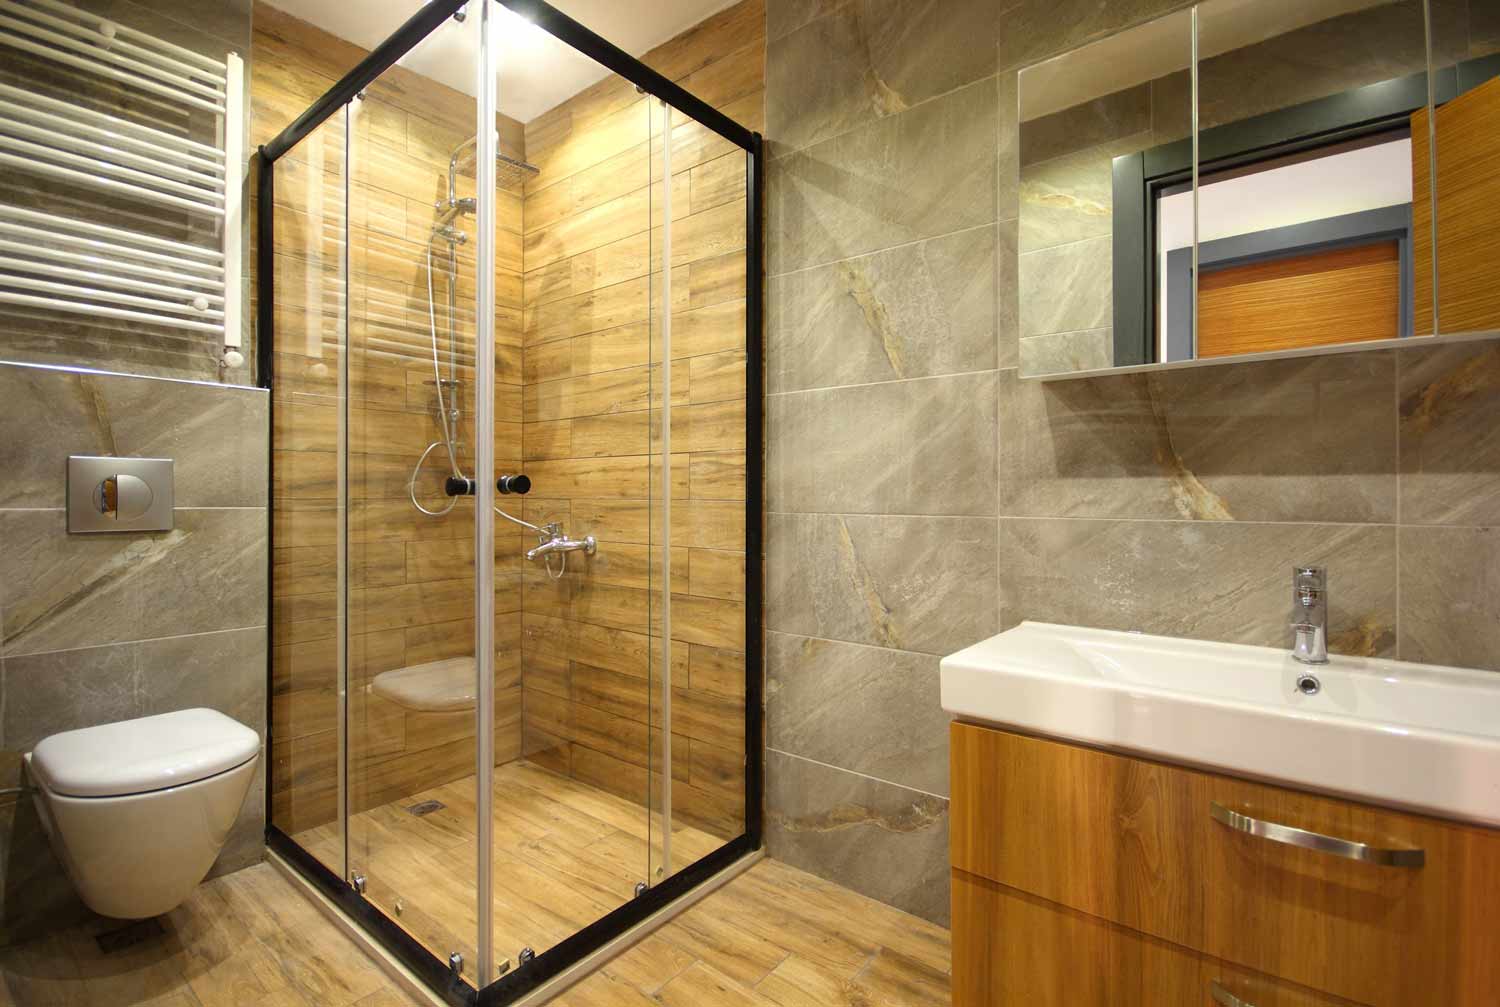 Bathroom Tile Ideas For Small Bathrooms, Ceramic Tile Shower Ideas Small Bathrooms